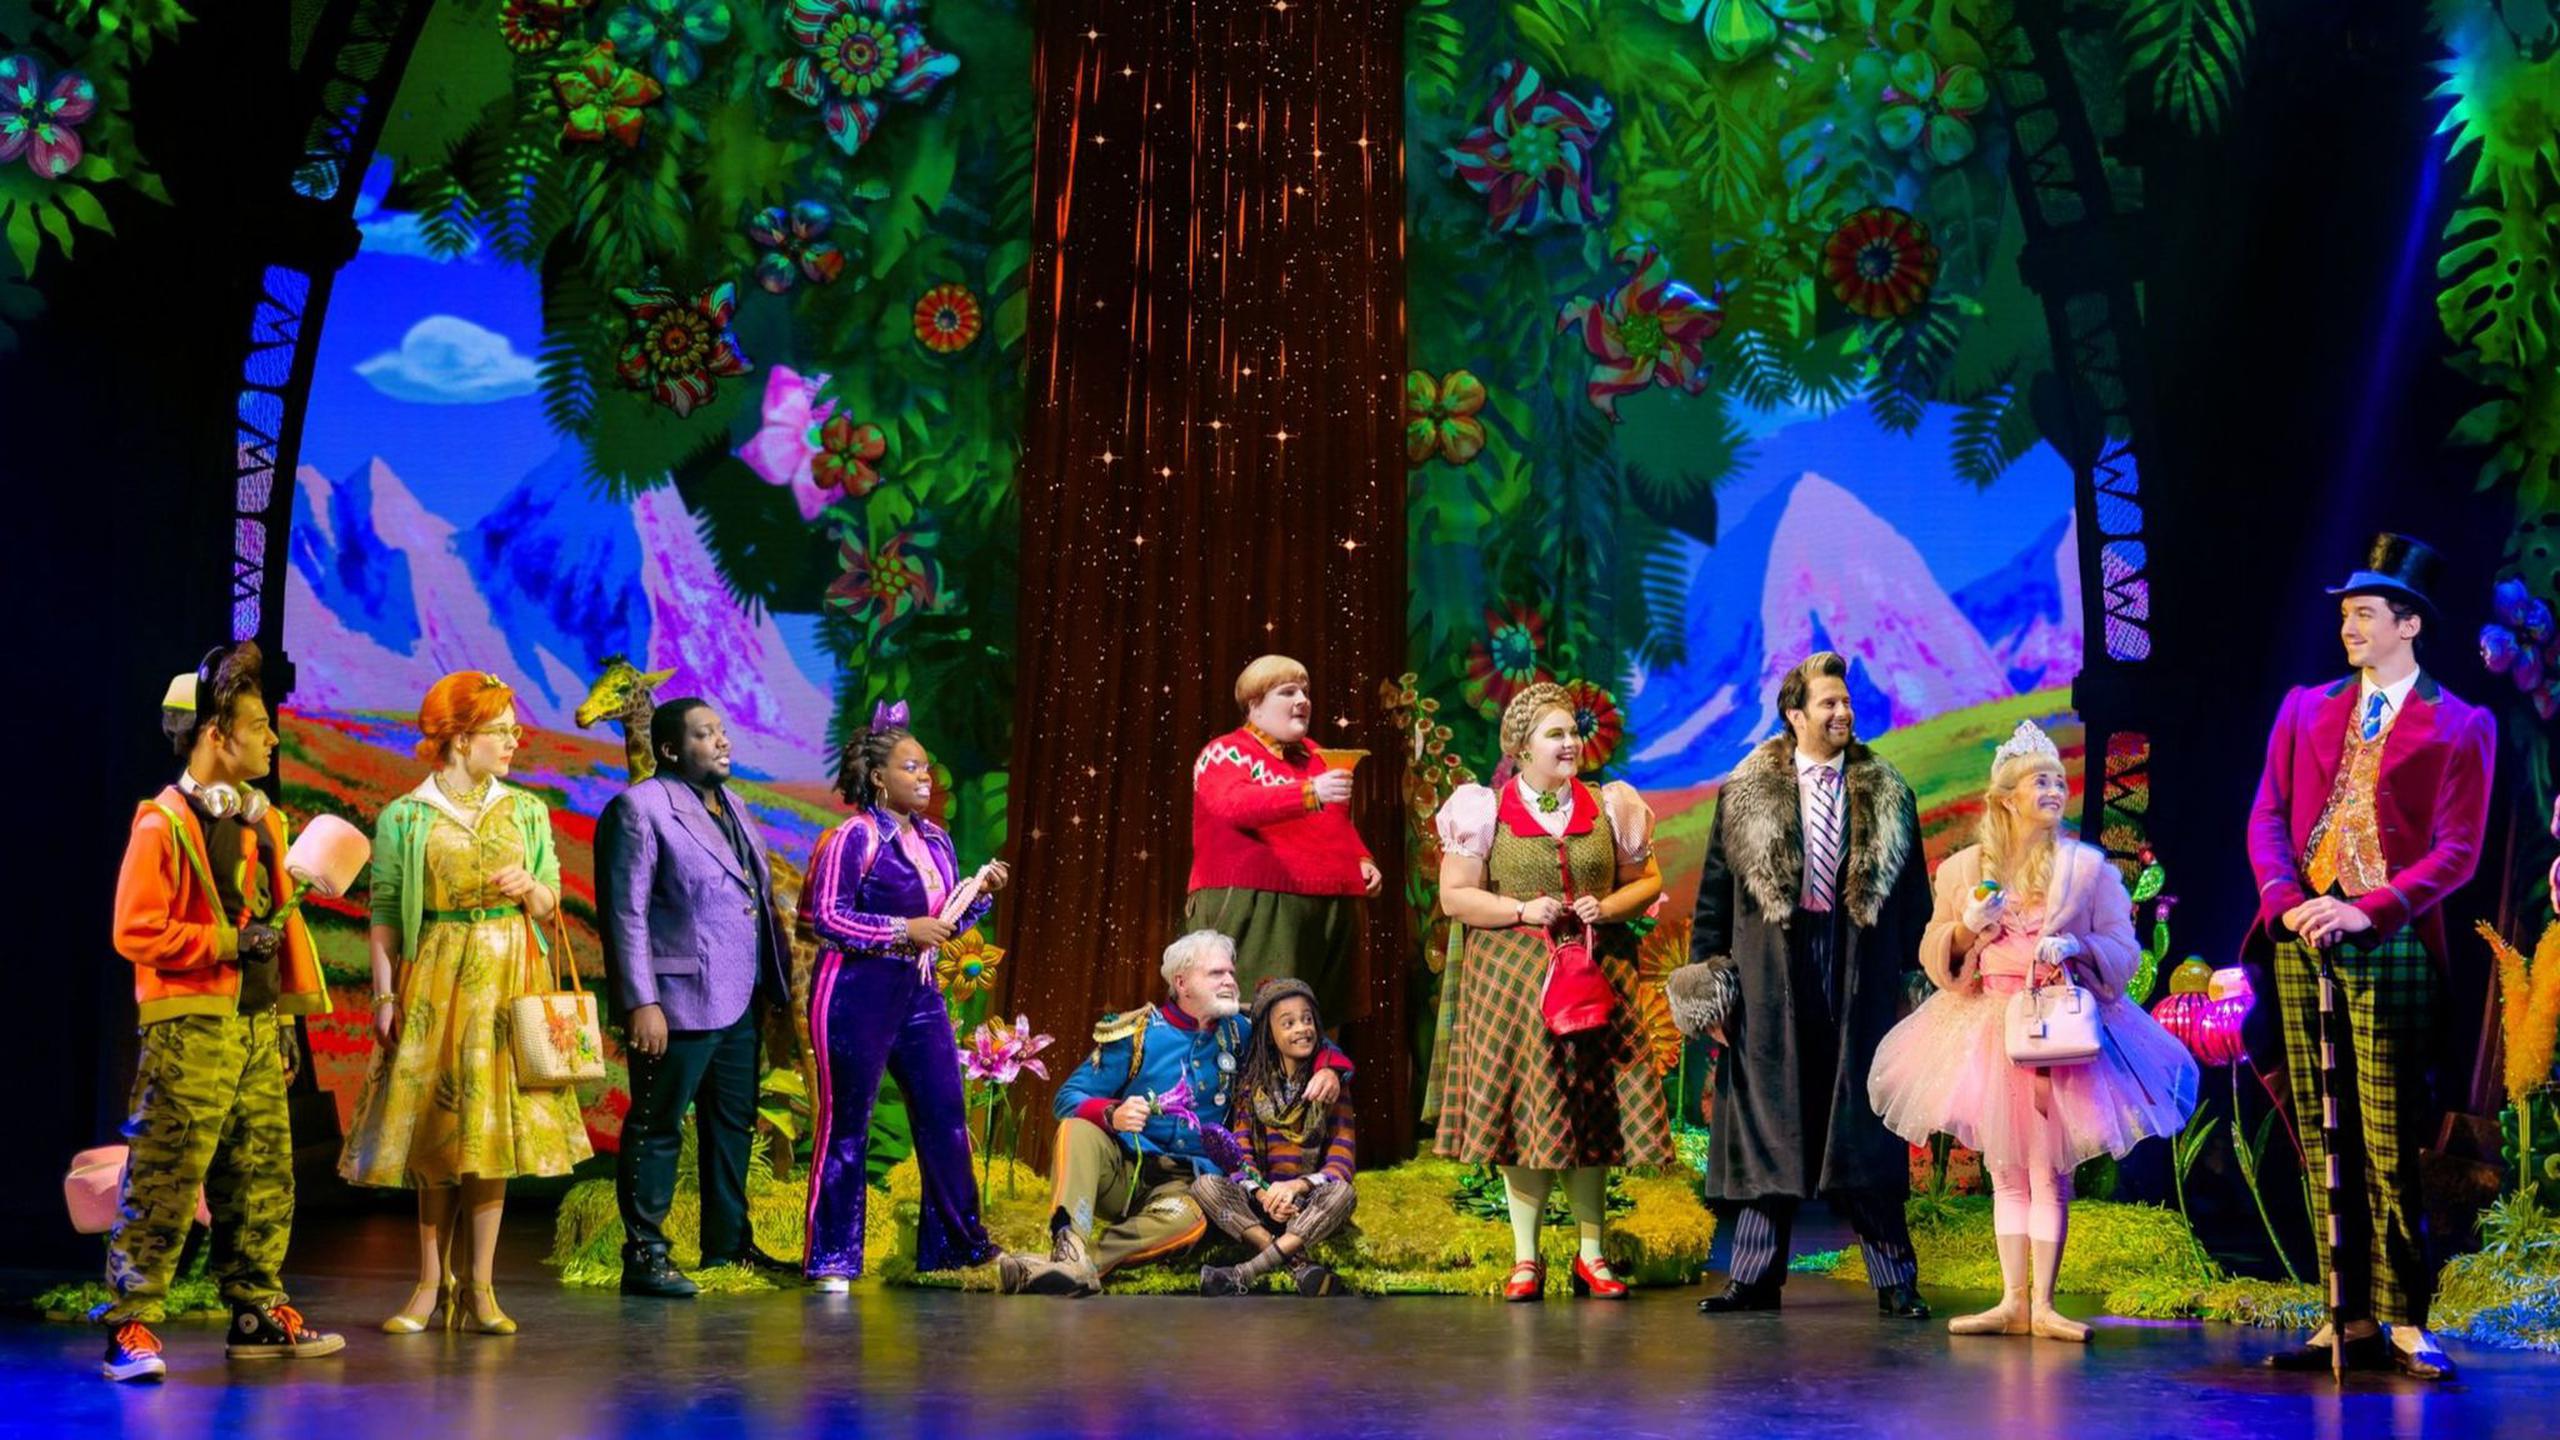 El musical "Roald Dahl's Charlie and the Chocolate Factory" realiza una gira por ciudades de Estados Unidos, México y Canadá.